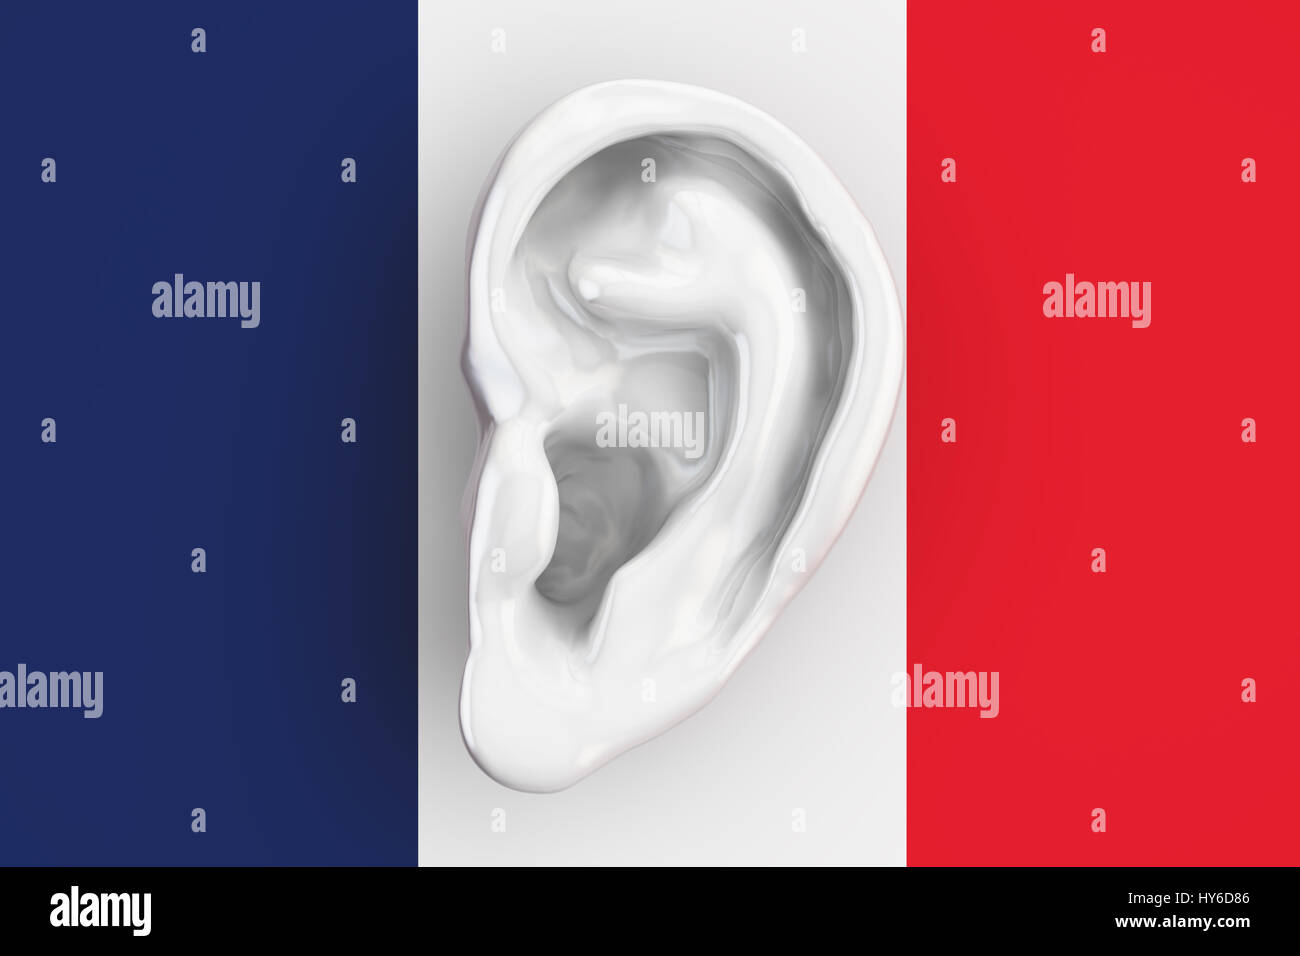 Französische Intelligenz Konzept, Ohr auf die Flagge Frankreichs. 3D-Rendering Stockfoto